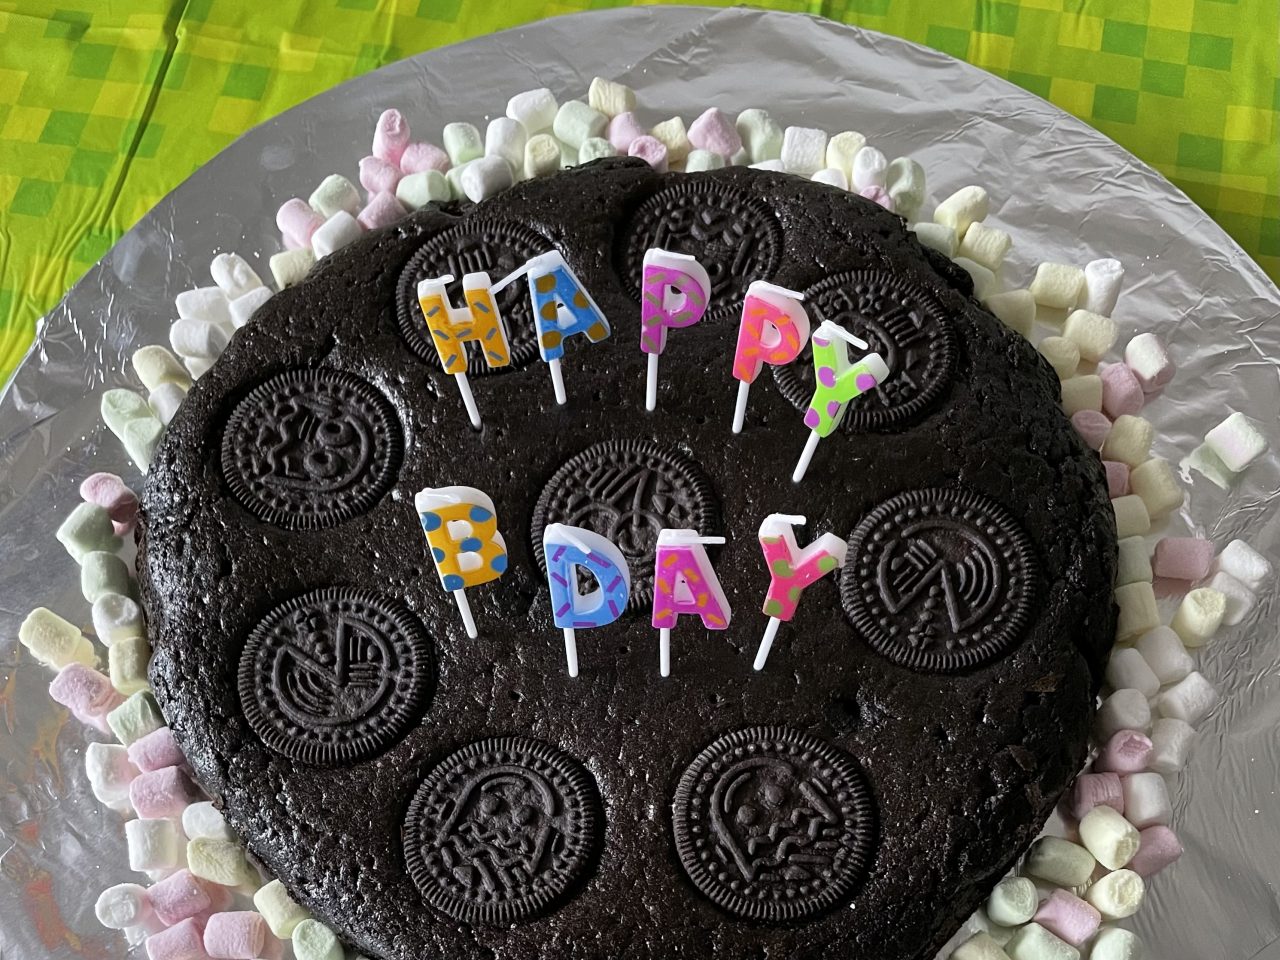 Oreo-Geburtstagskuchen mit "Happy Bday"-Kerzen und umgebenvon  Minimarshmallows auf einem silbernen Teller und grüner Tischdecke